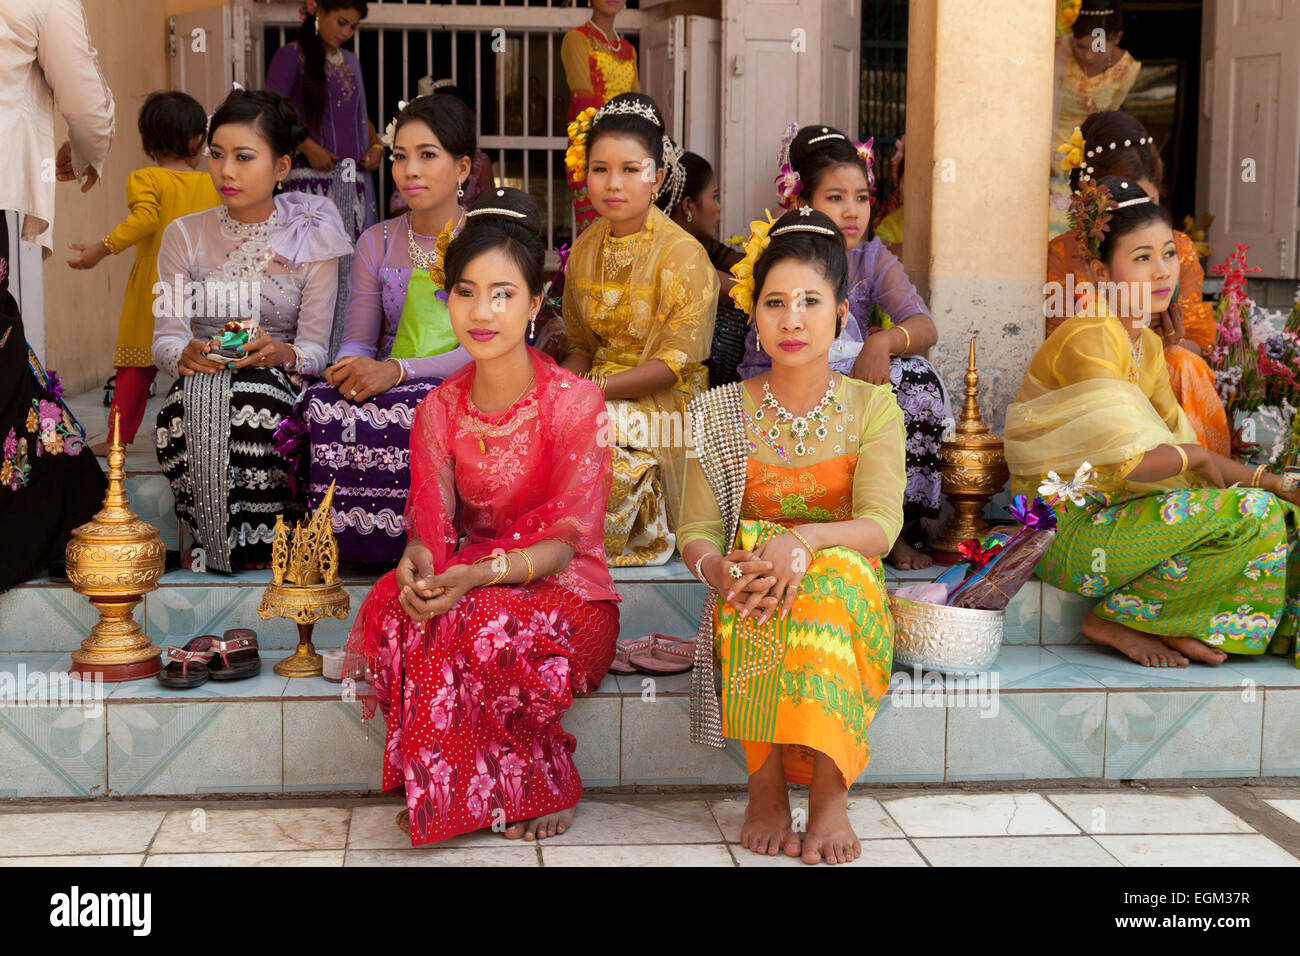 Neautiful les jeunes femmes birmanes habillés en tenue de cérémonie, temple du Bouddha Mahamuni, Mandalay, Myanmar ( Birmanie ), l'Asie Banque D'Images